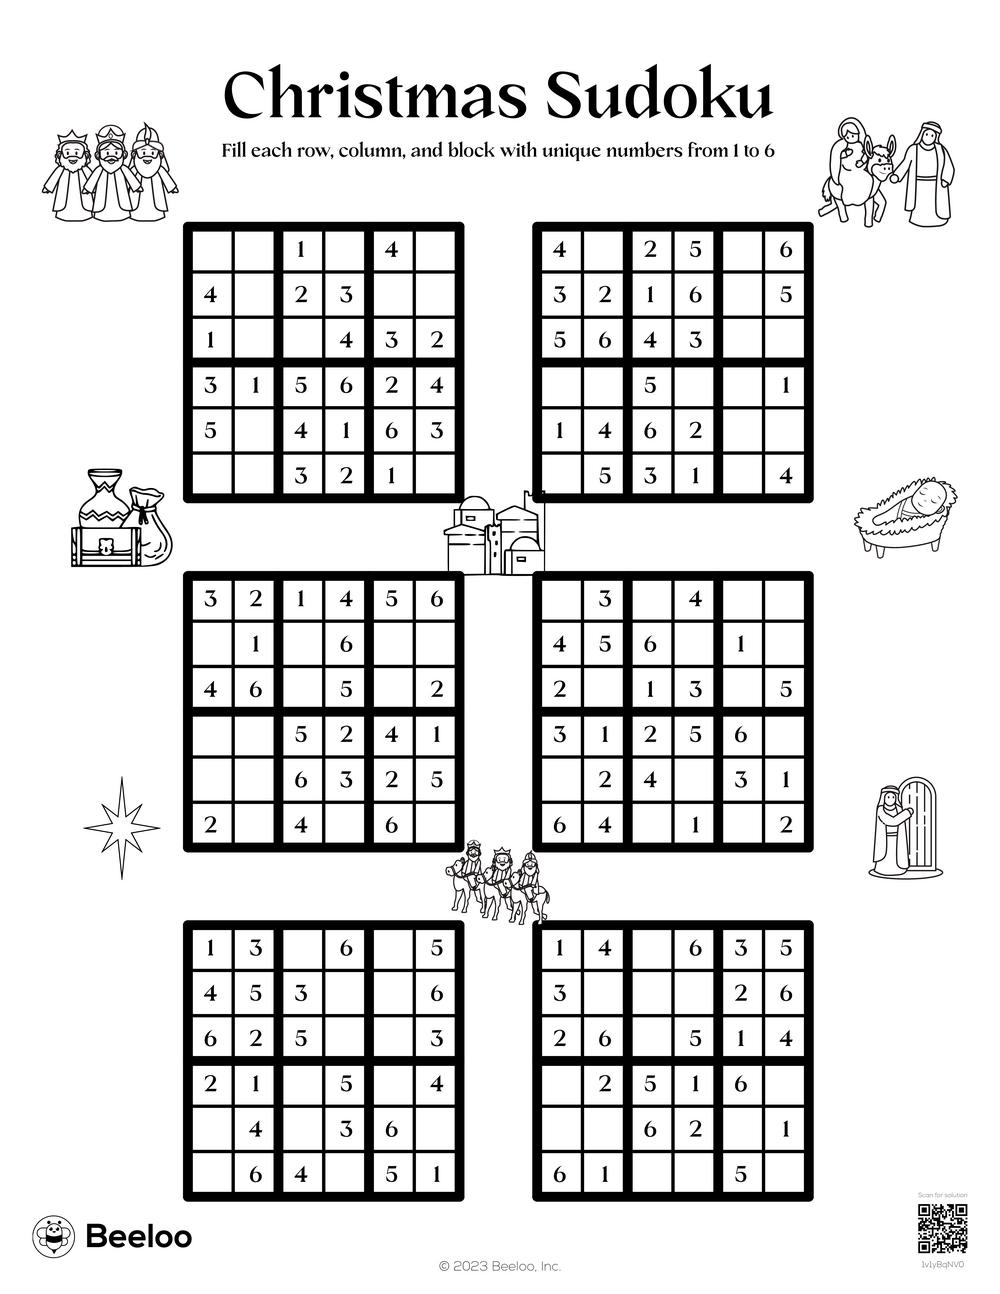 Christmas sudoku â printable crafts and activities for kids